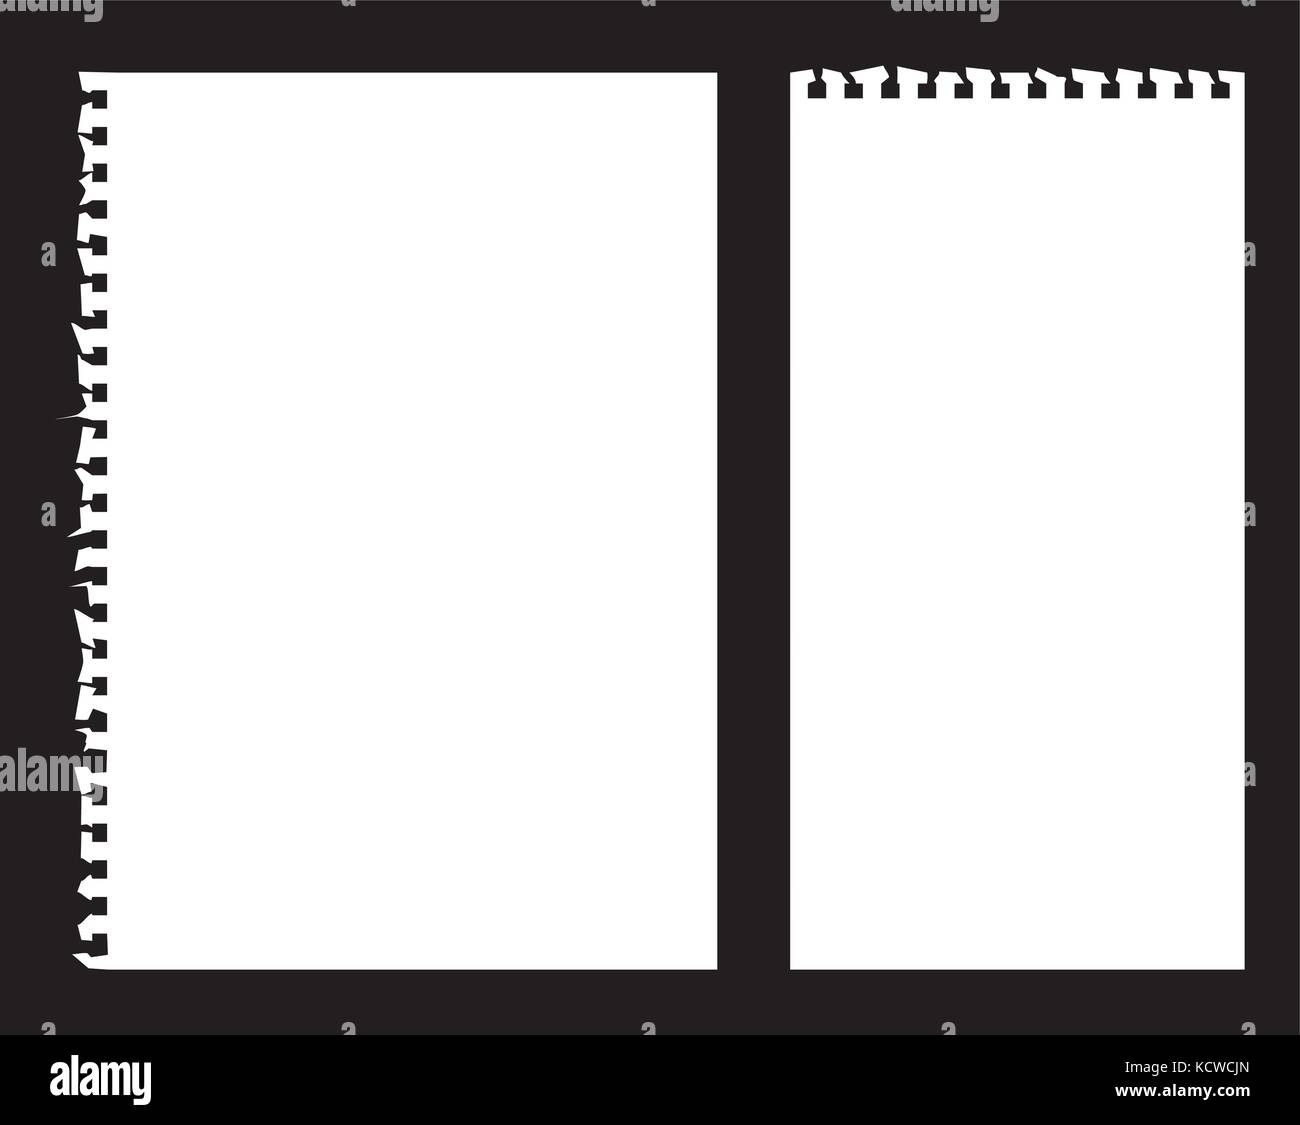 Zerrissene Notiz Buch Papier Vektoren auf schwarzem Hintergrund Stock Vektor